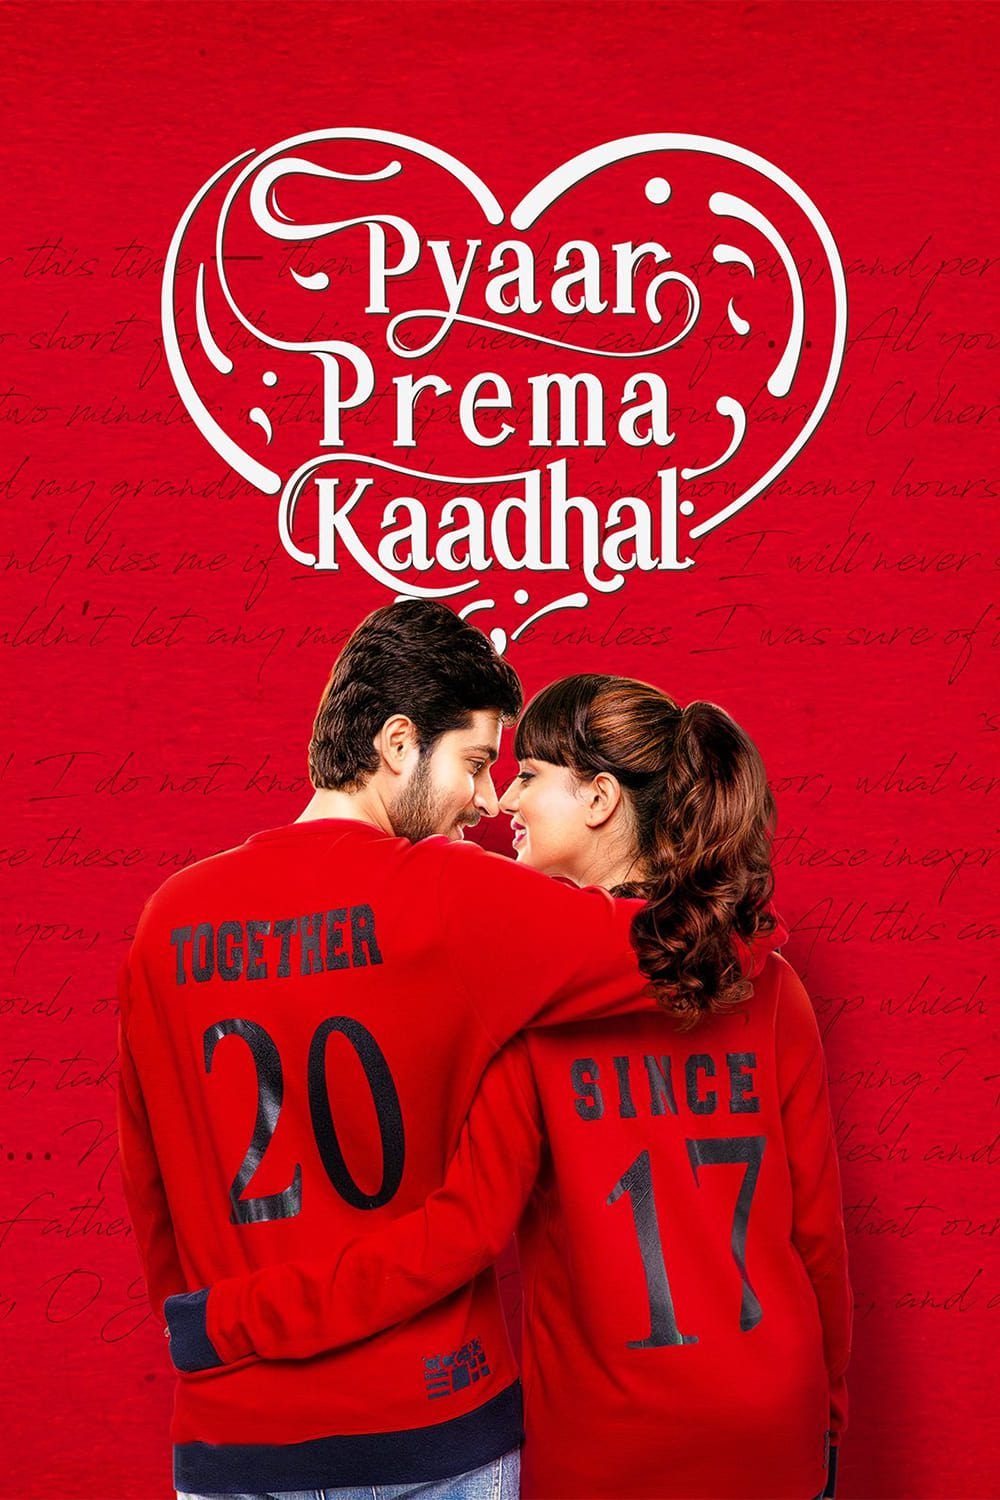 Poster for the movie "Pyaar Prema Kaadhal"